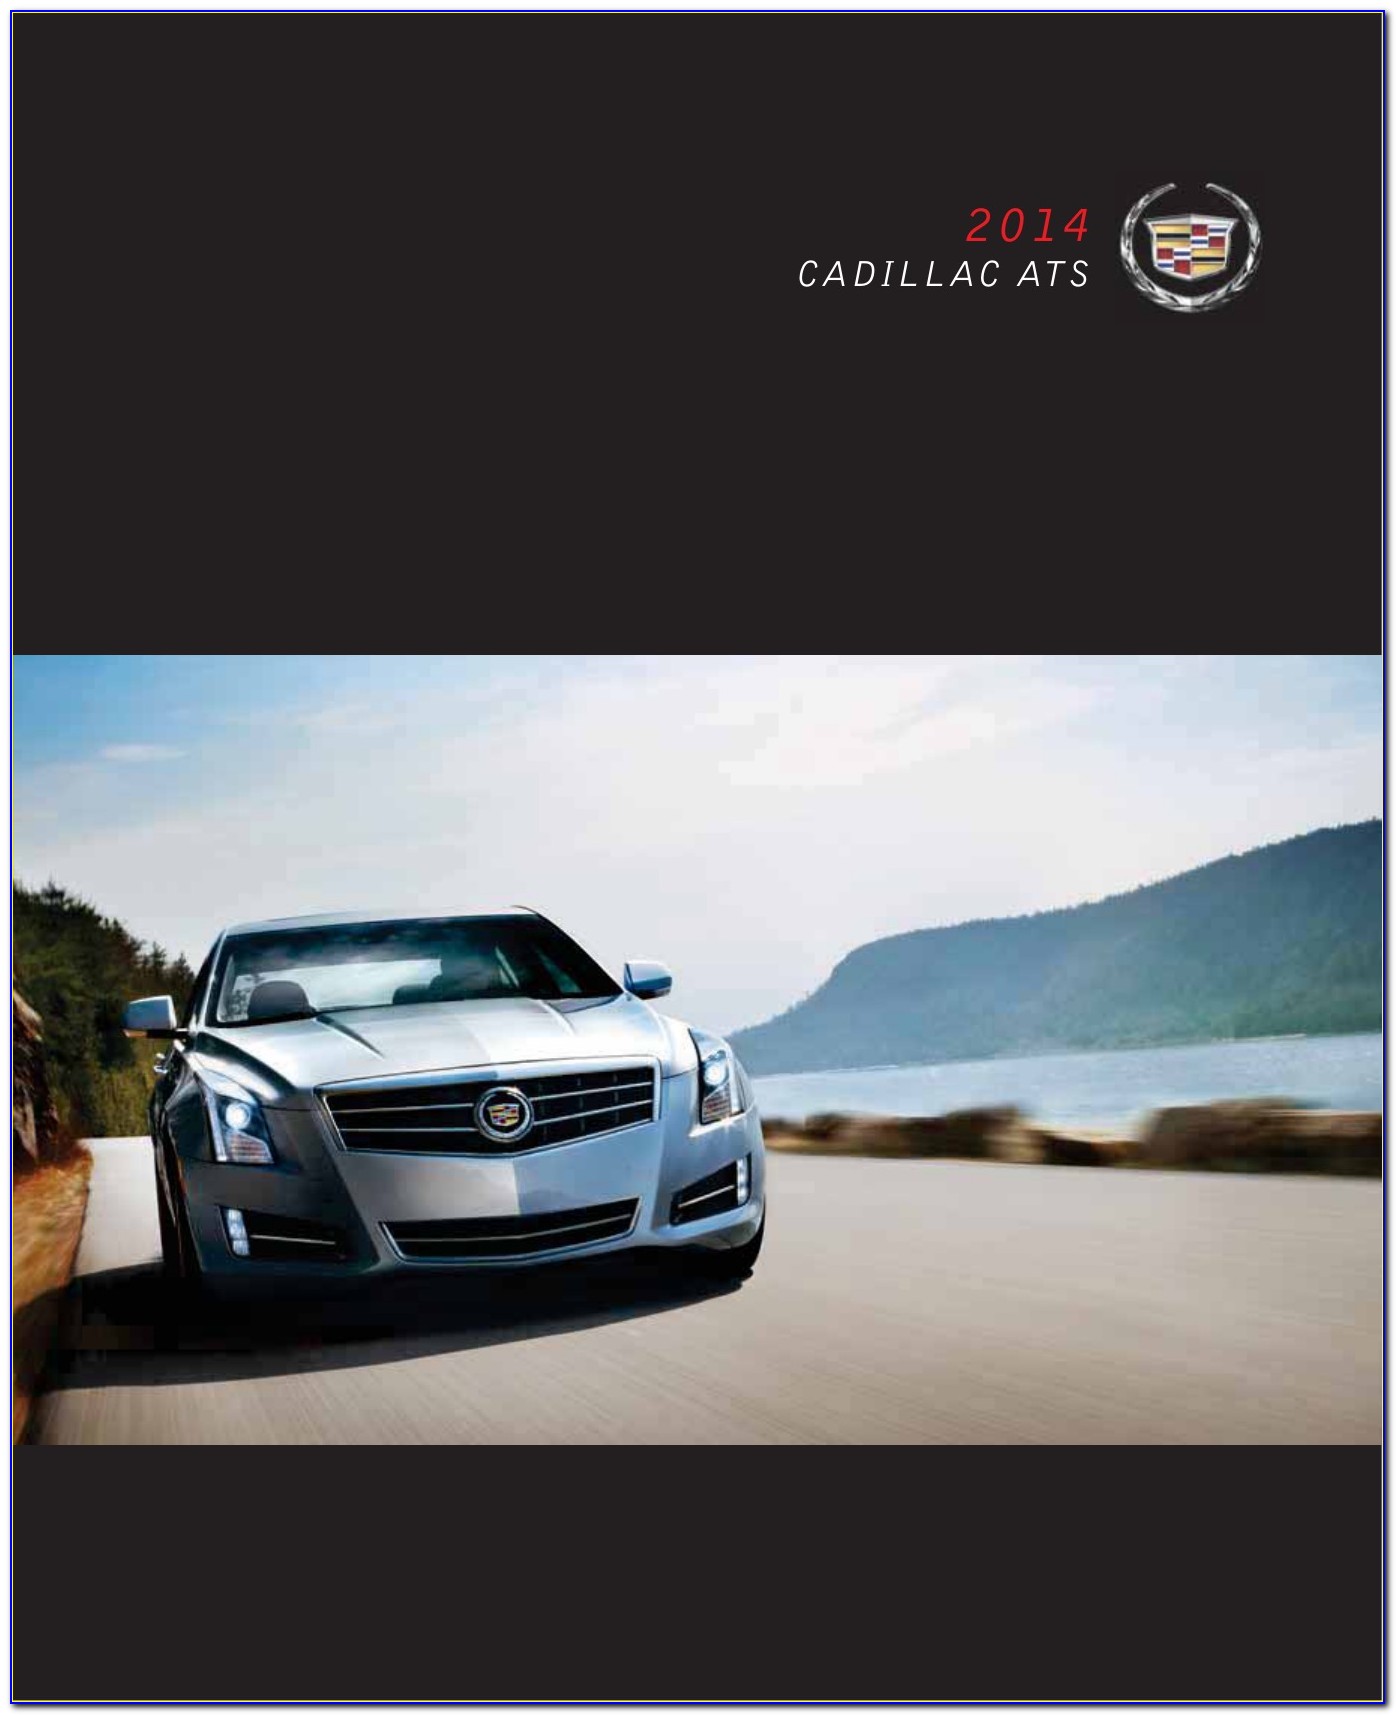 2013 Cadillac Ats Brochure Pdf